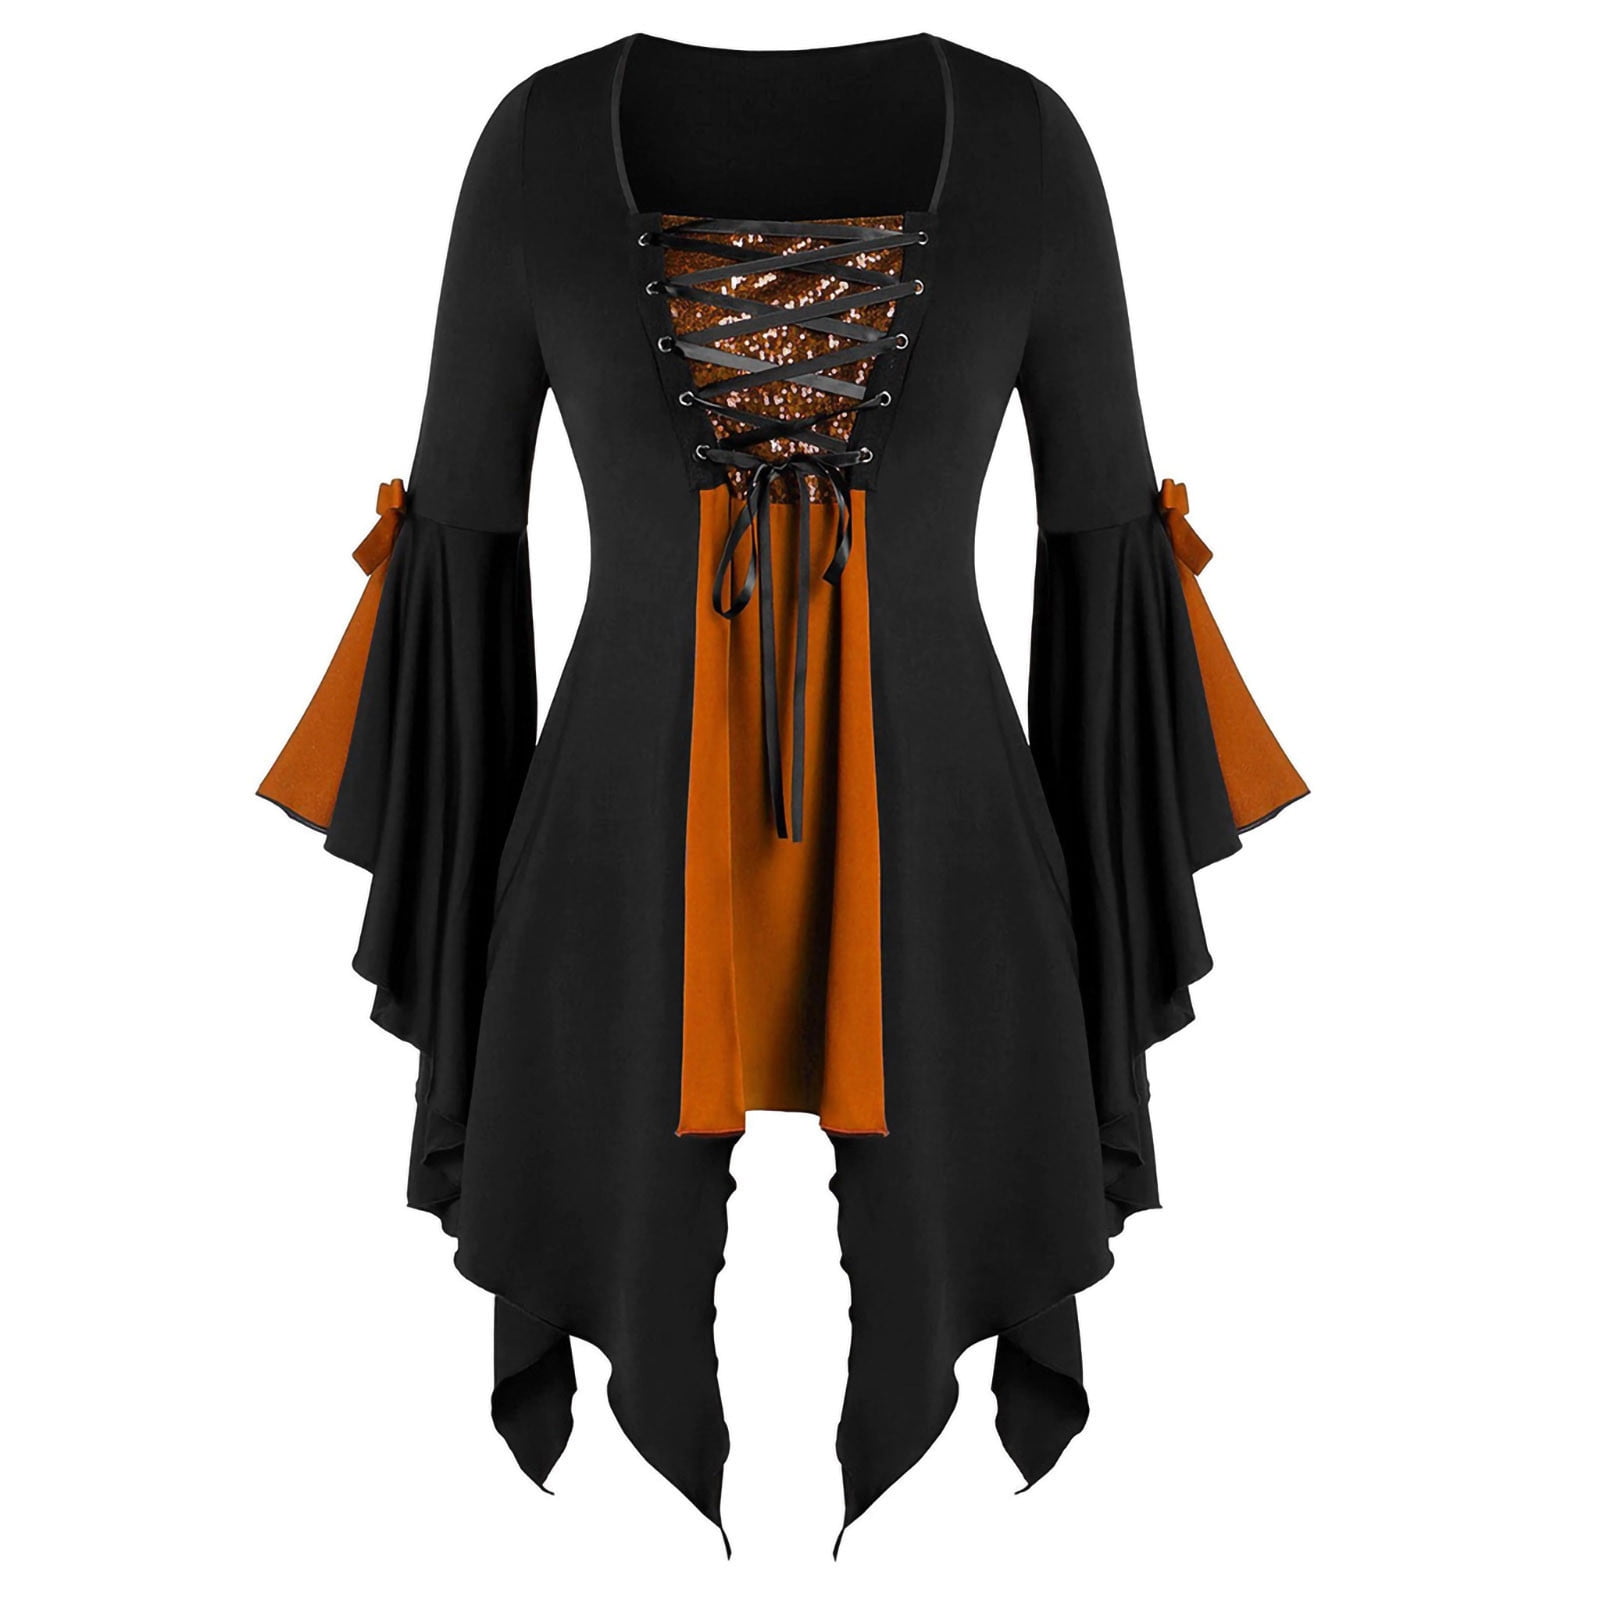 Lataw Women Halloween Tops Patchwork Gothic Criss Cross Sequin Insert Butterfly Sleeve T-Shirt Shirt Blouse 